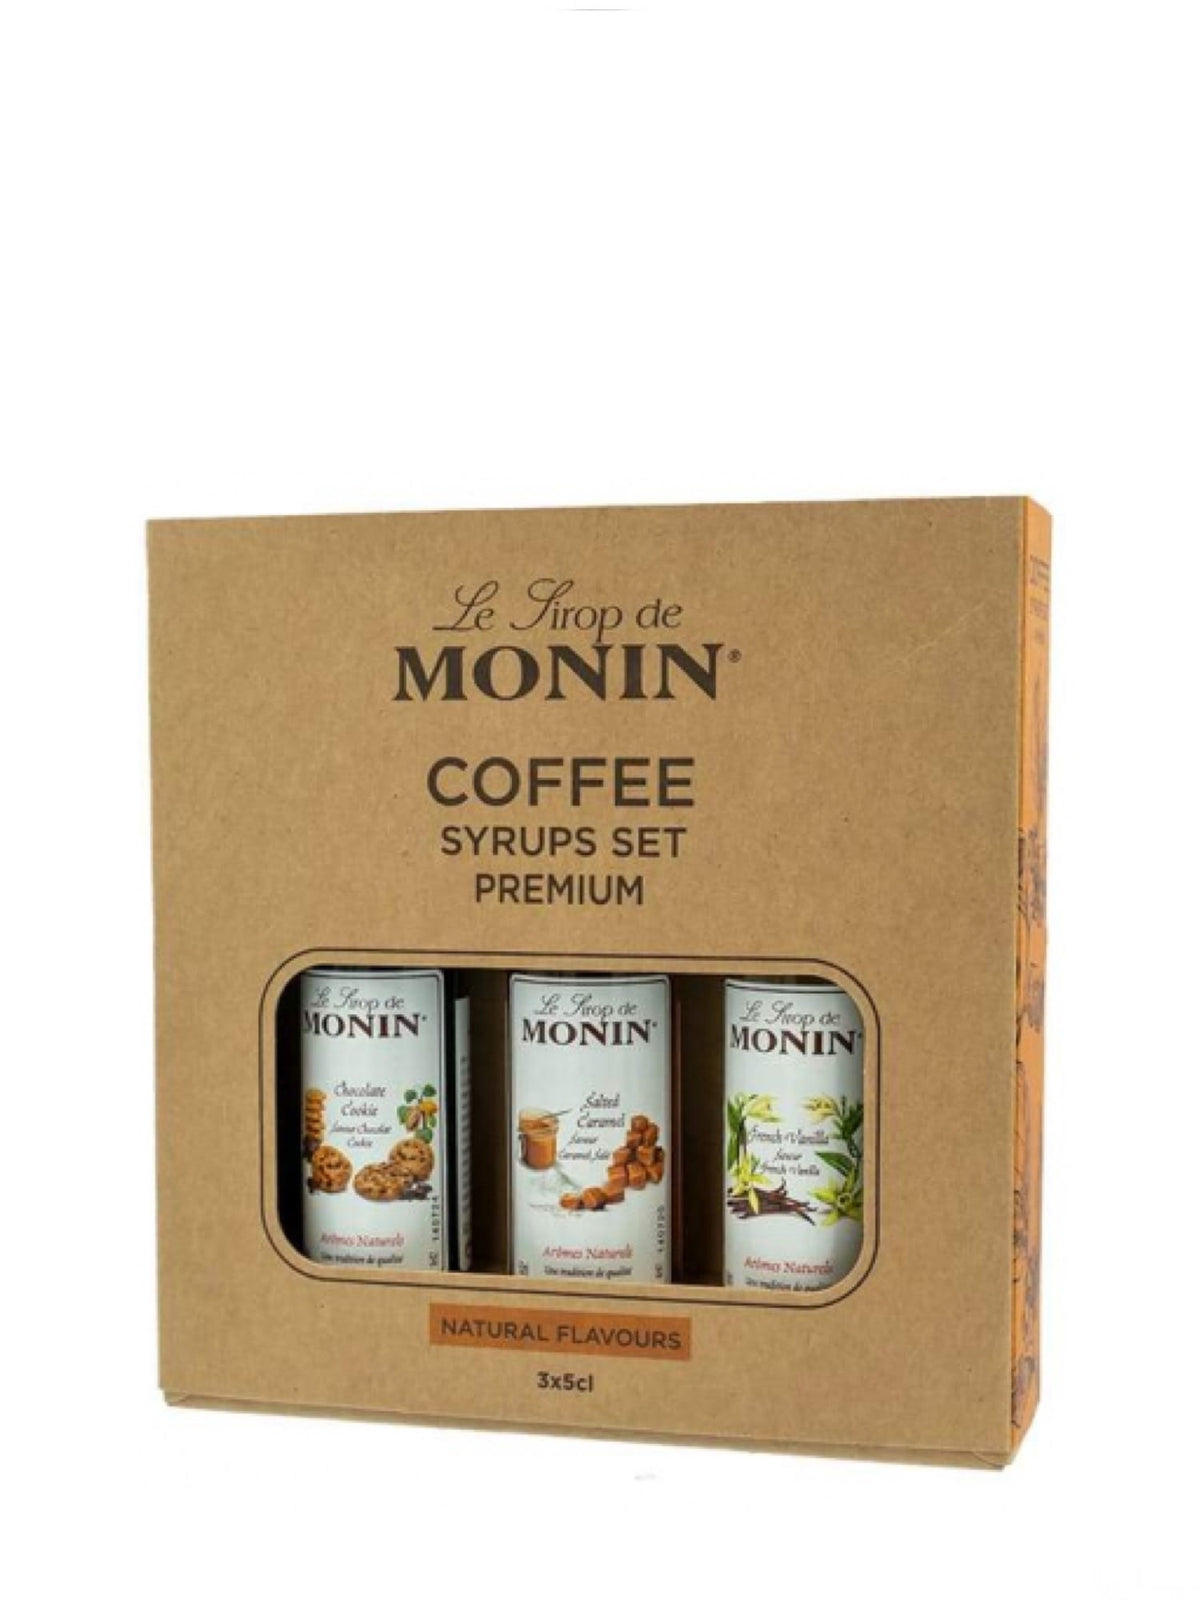 Skab lækre kaffedrikke derhjemme med Monin Kaffesirup-sættet